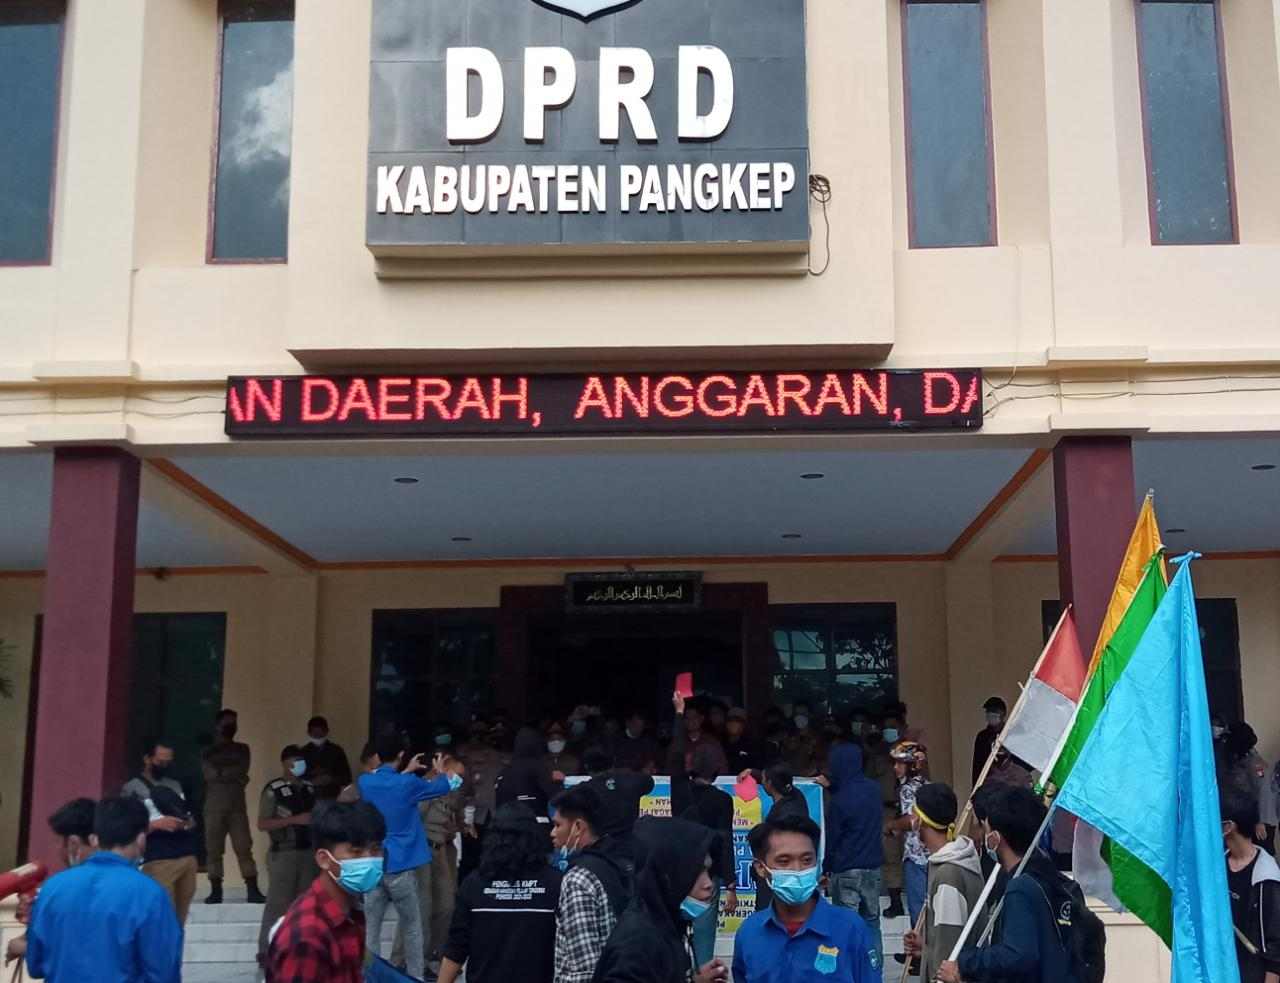 DPRD Kabupaten Pangkep Dapat Kartu Merah Dari Mahasiswa